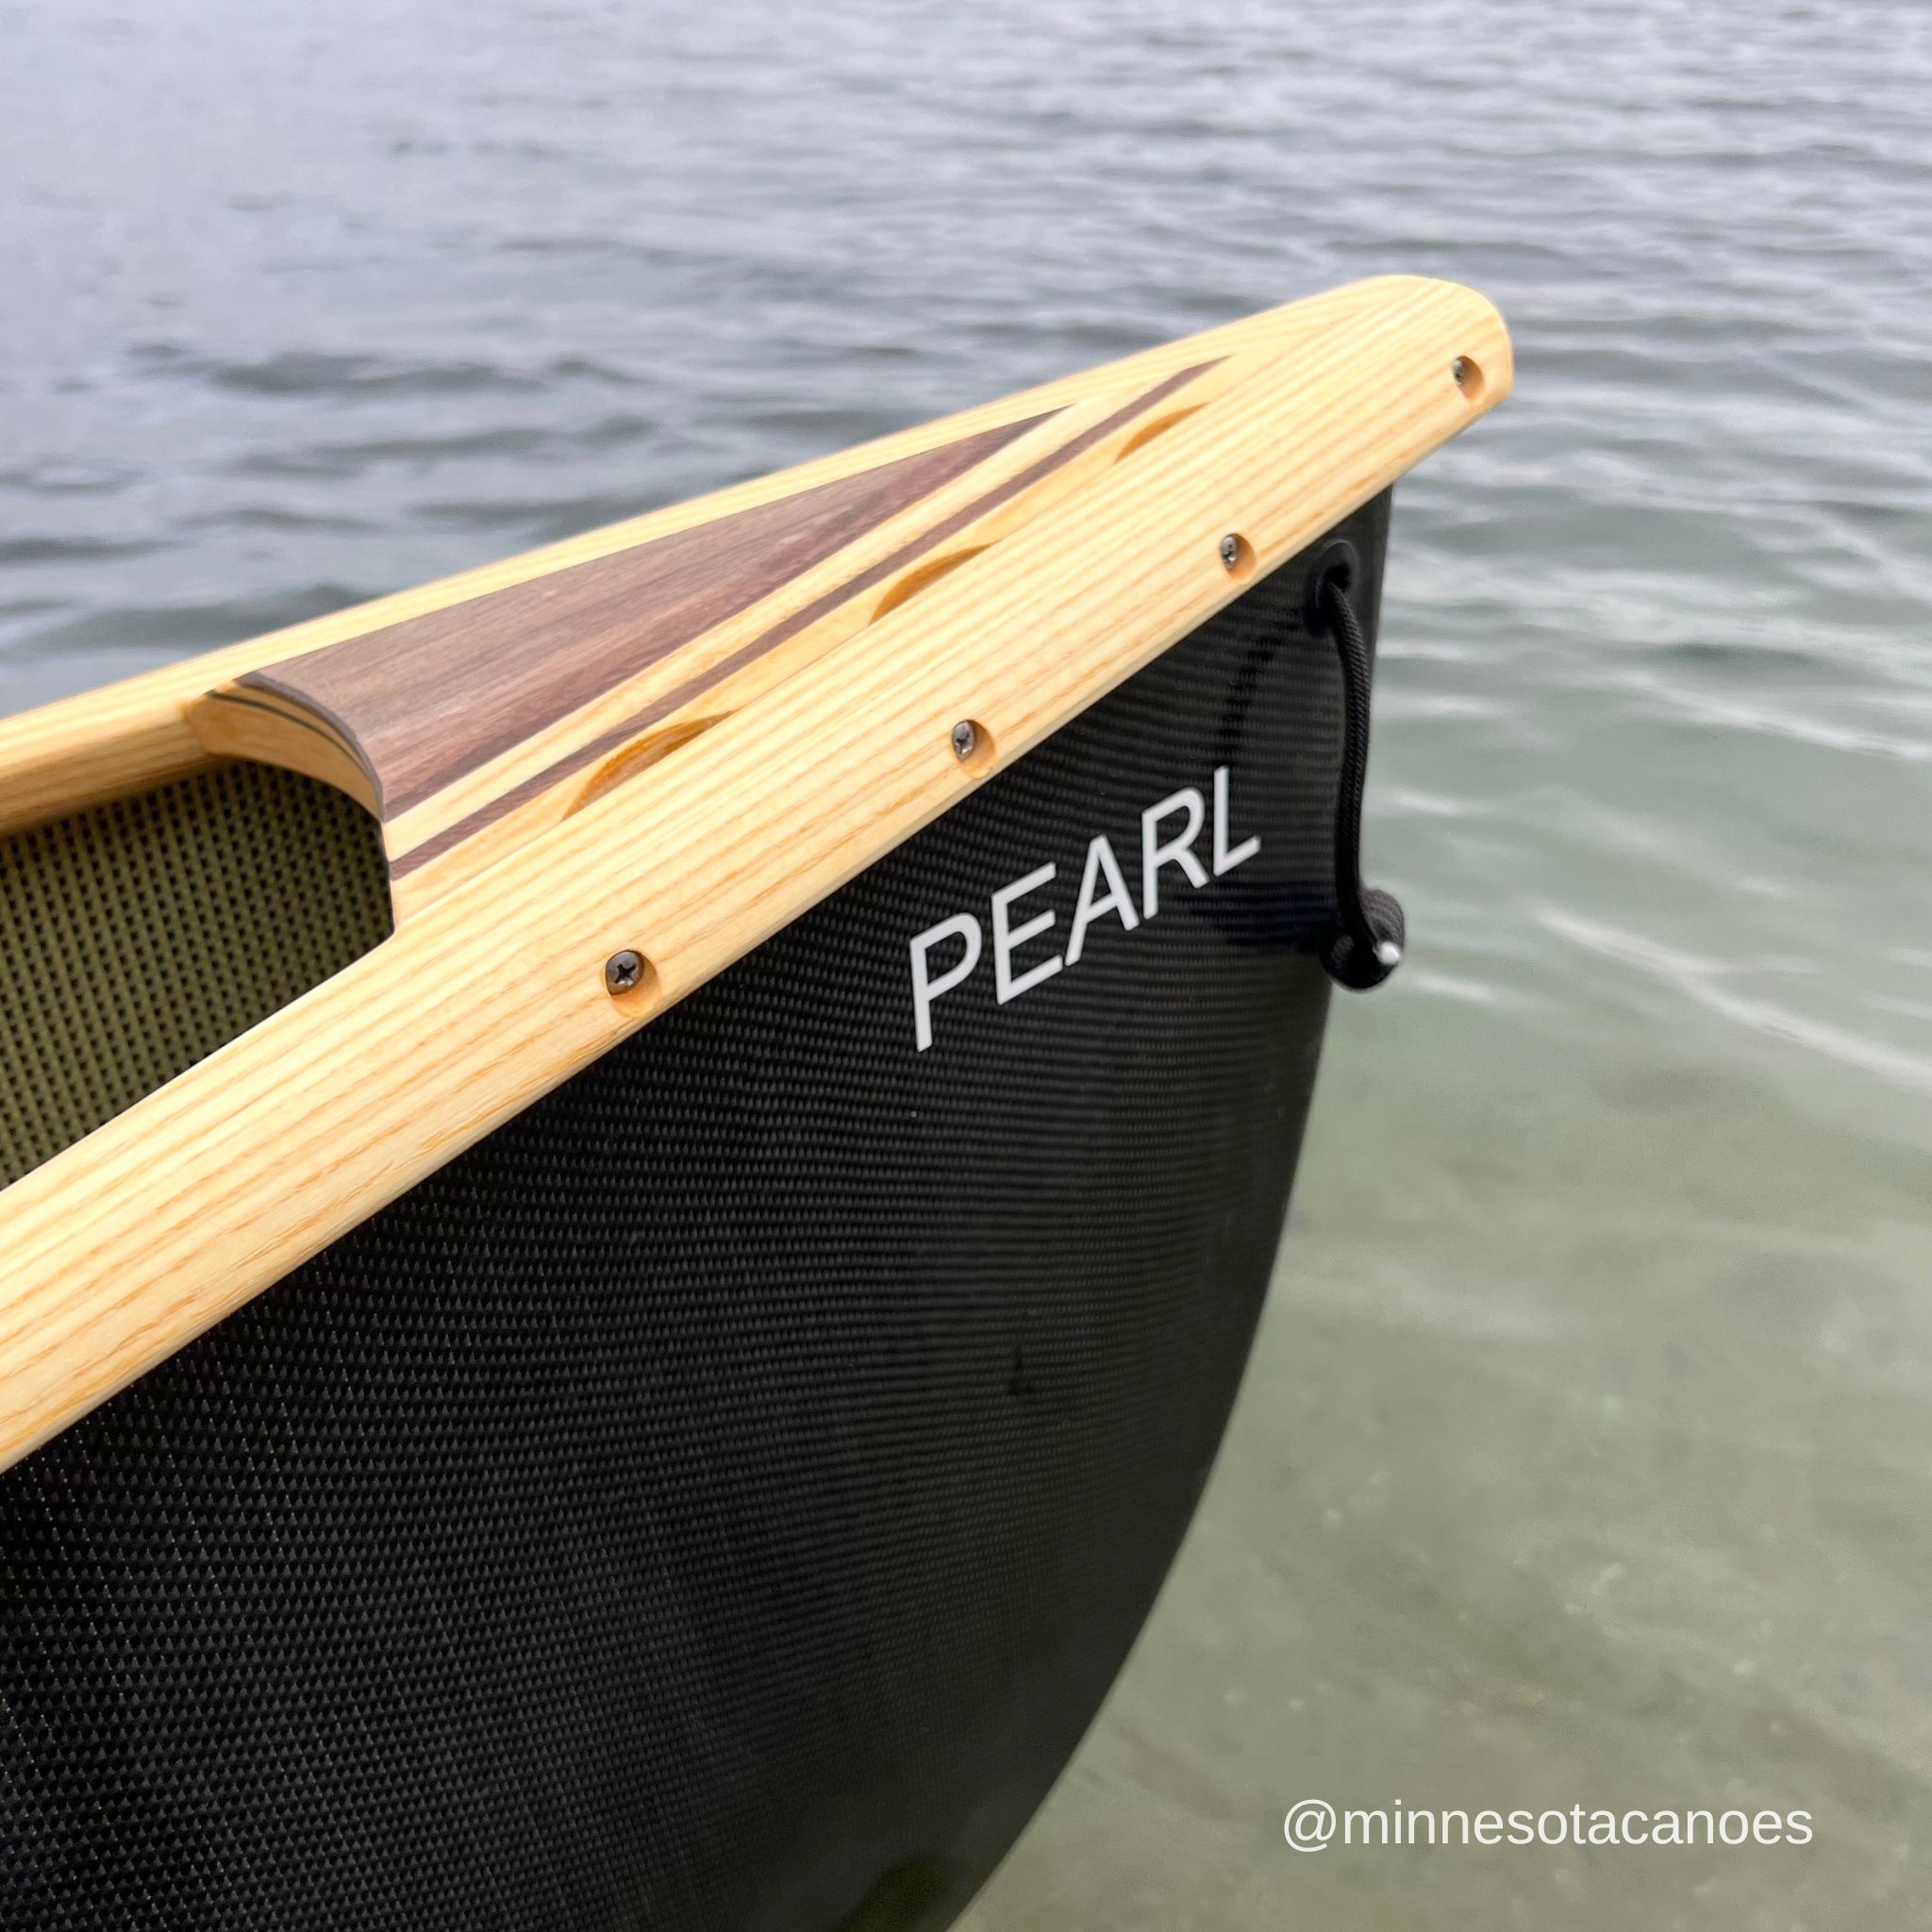 PEARL (15' 9") BlackLite w/Wood Trim Tandem Northstar Canoe